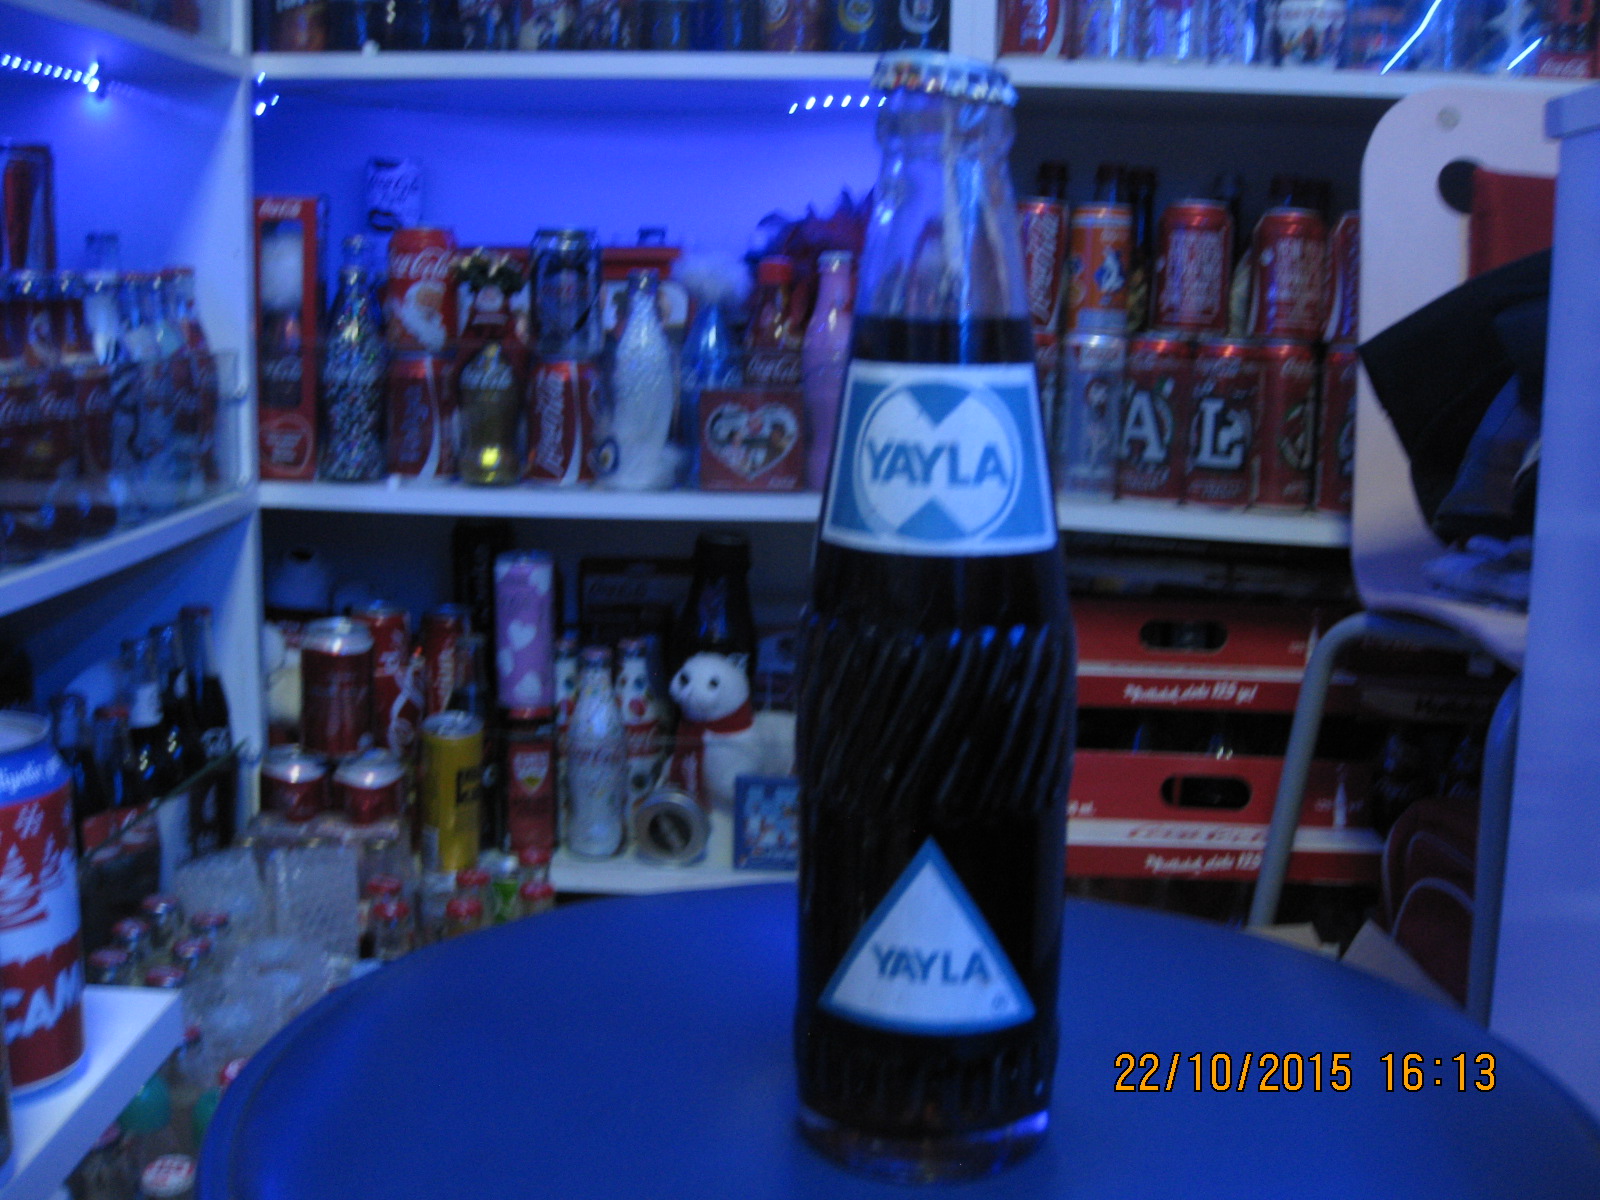 Yayla gazoz Gaziantep farklı şişe